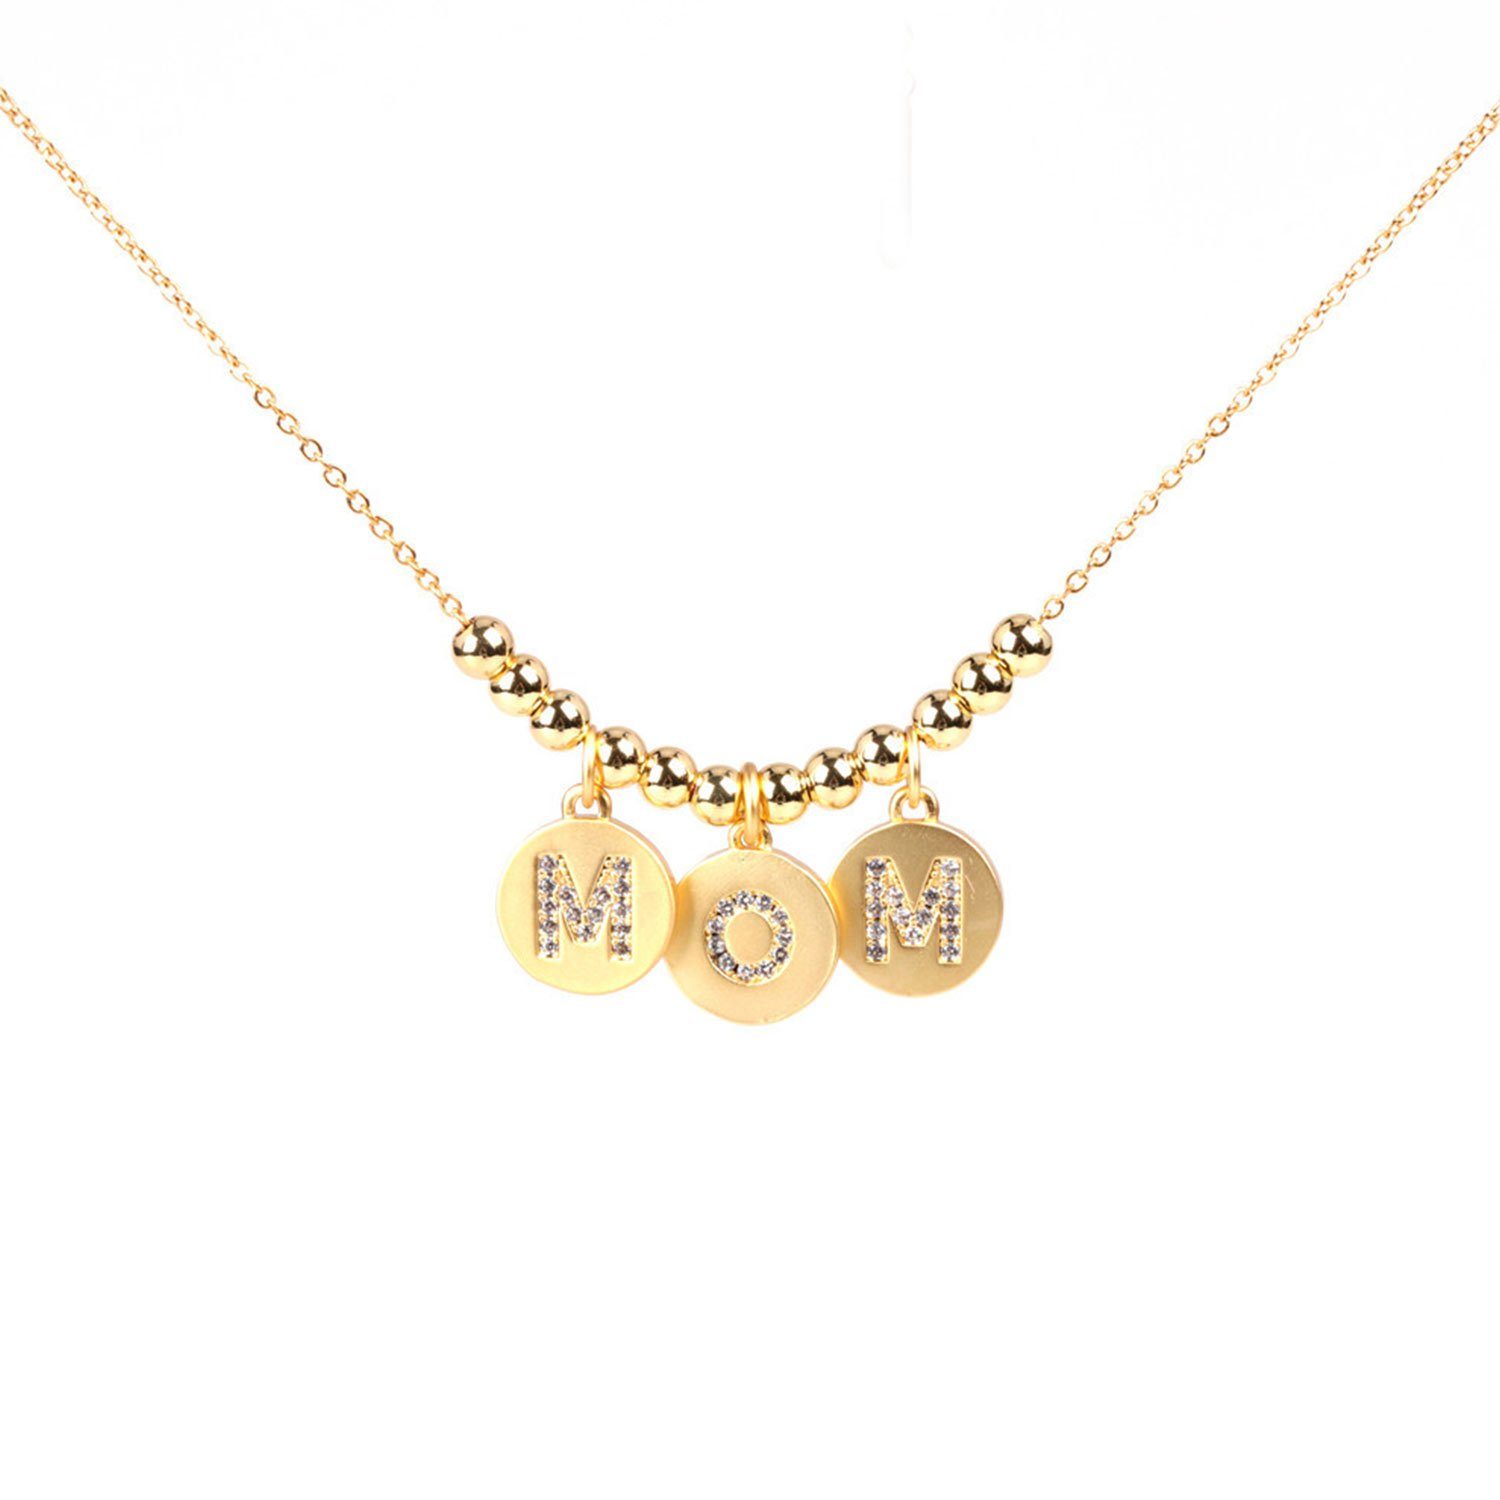 MAGICSHE Kette mit Anhänger Muttertag kette MoM Goldkette Damen Halskette, Ketten Schmuck Geschenk runde Buchstaben